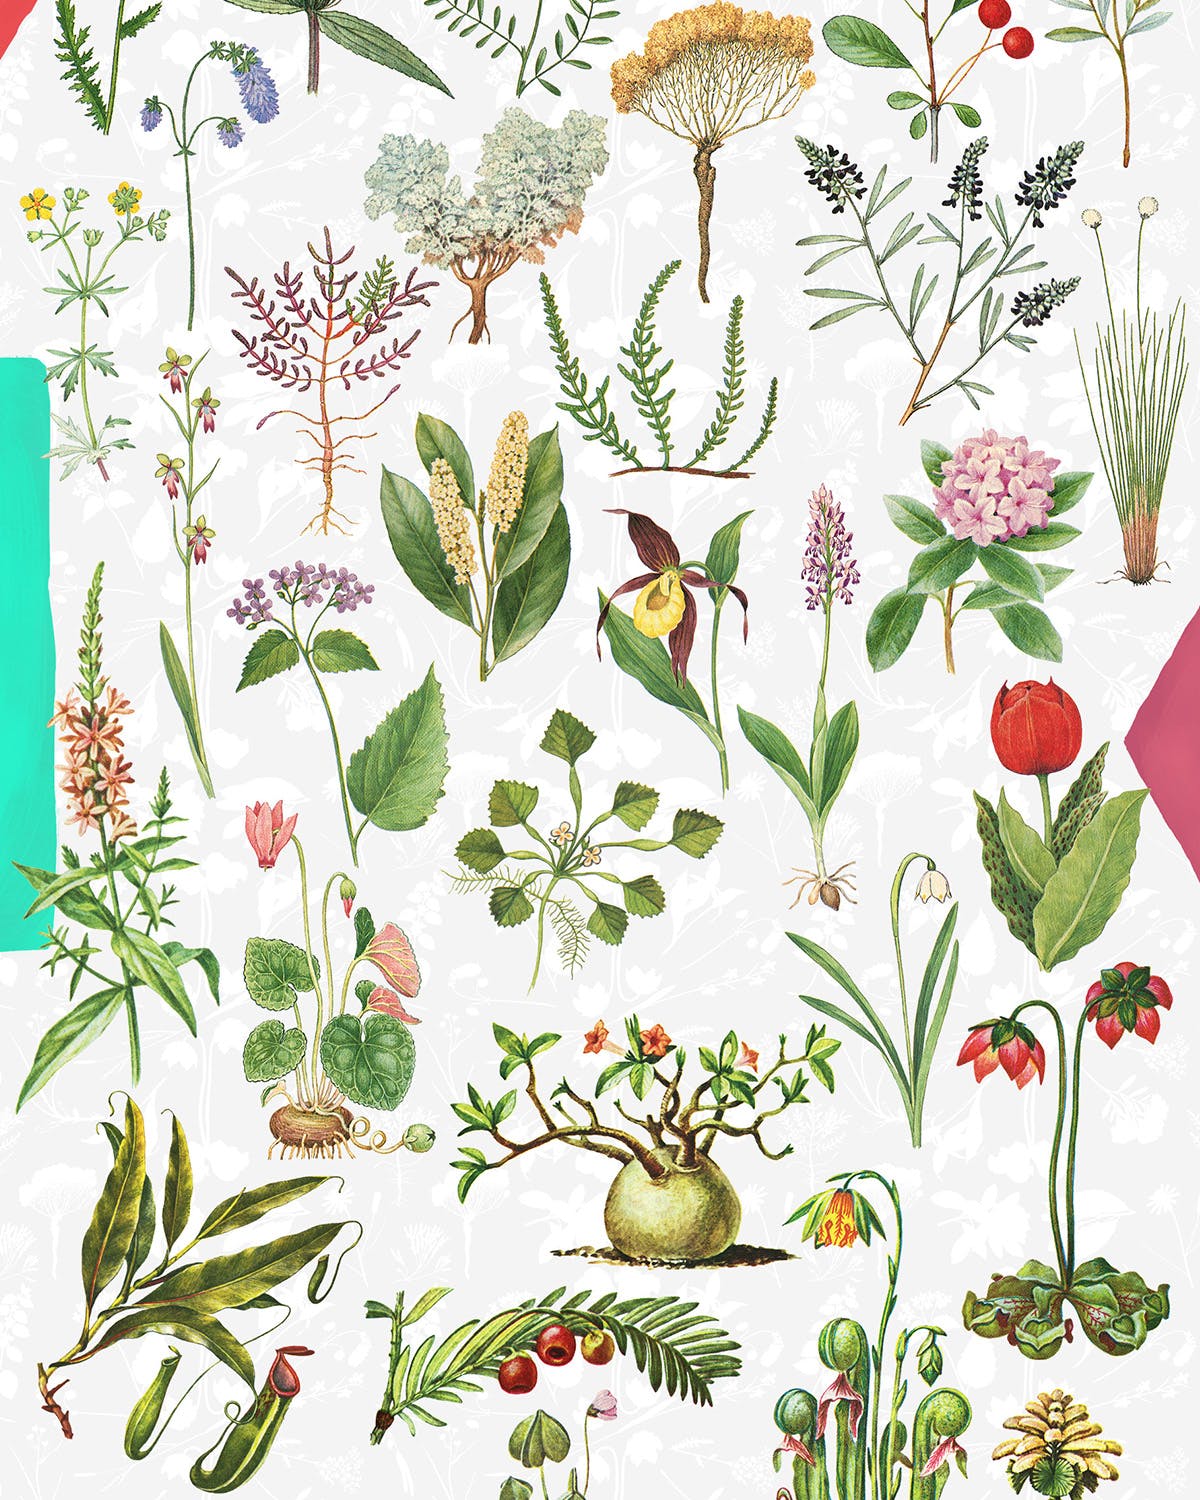 45款植物水彩手绘插画PNG素材 Dryad – Botanical Illustrations插图(2)